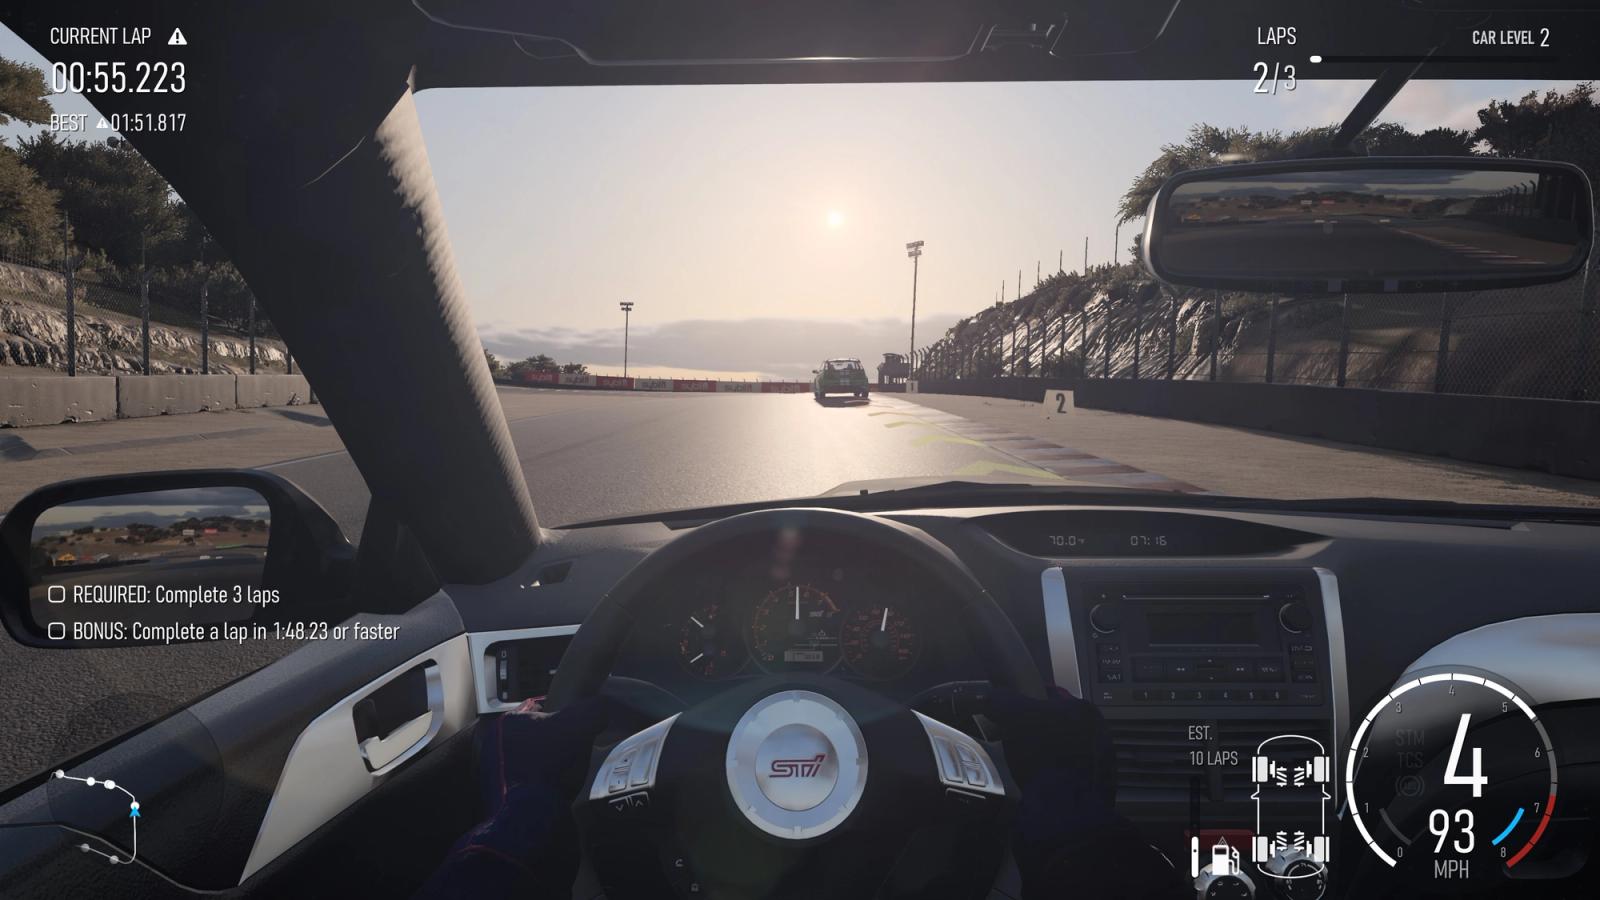 How to skip practice in Forza Motorsport